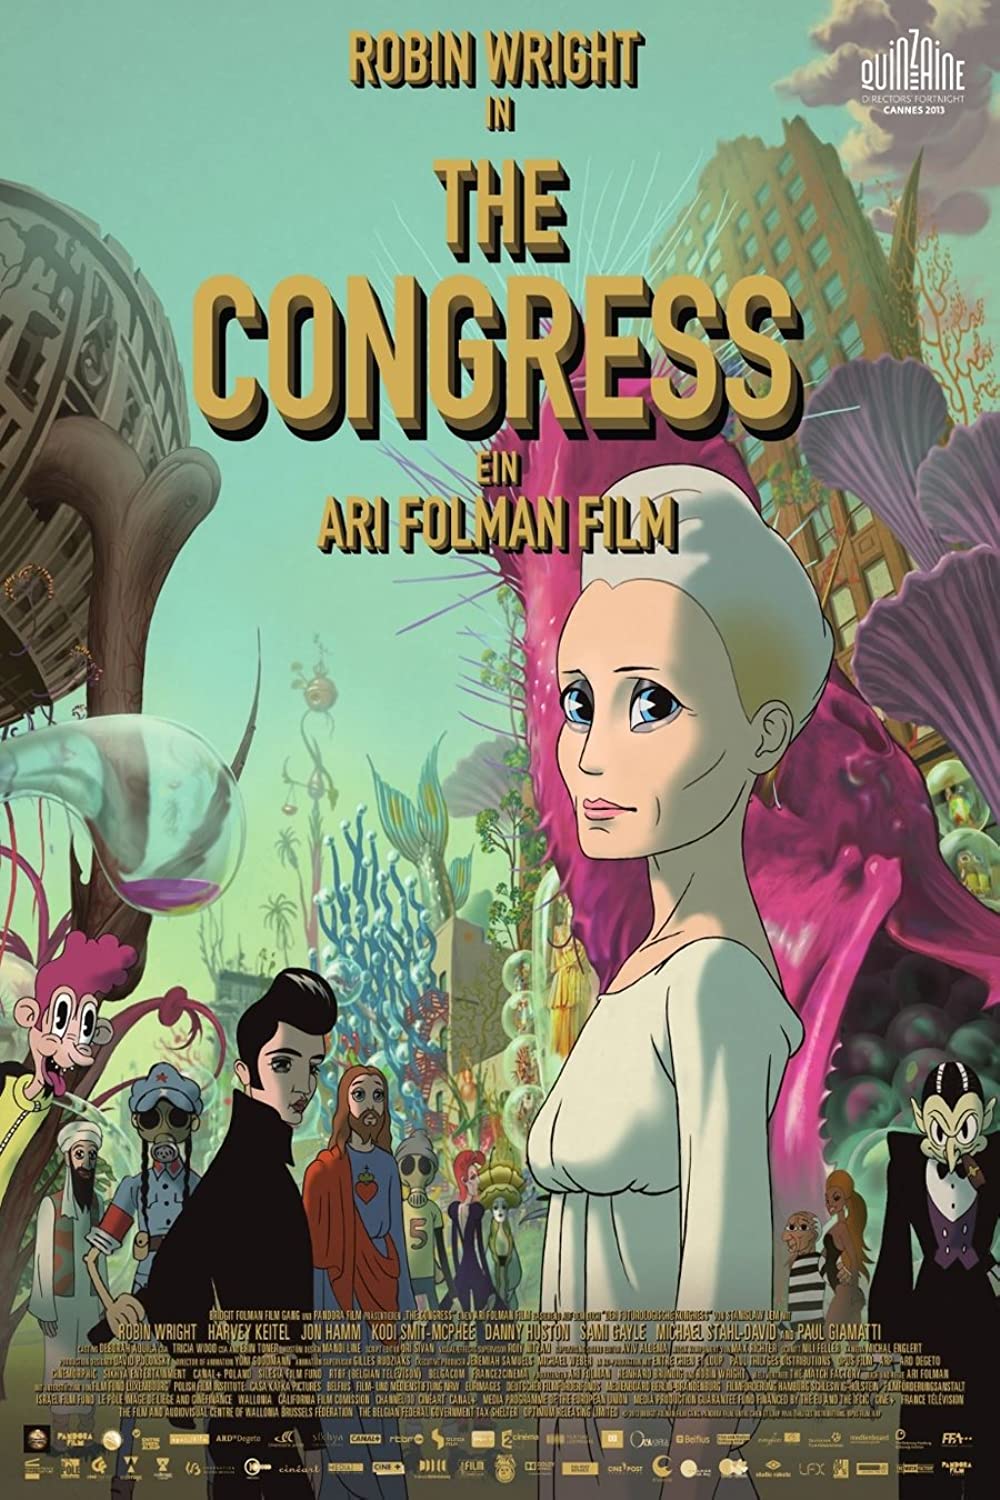 Filmbeschreibung zu The Congress (OV)